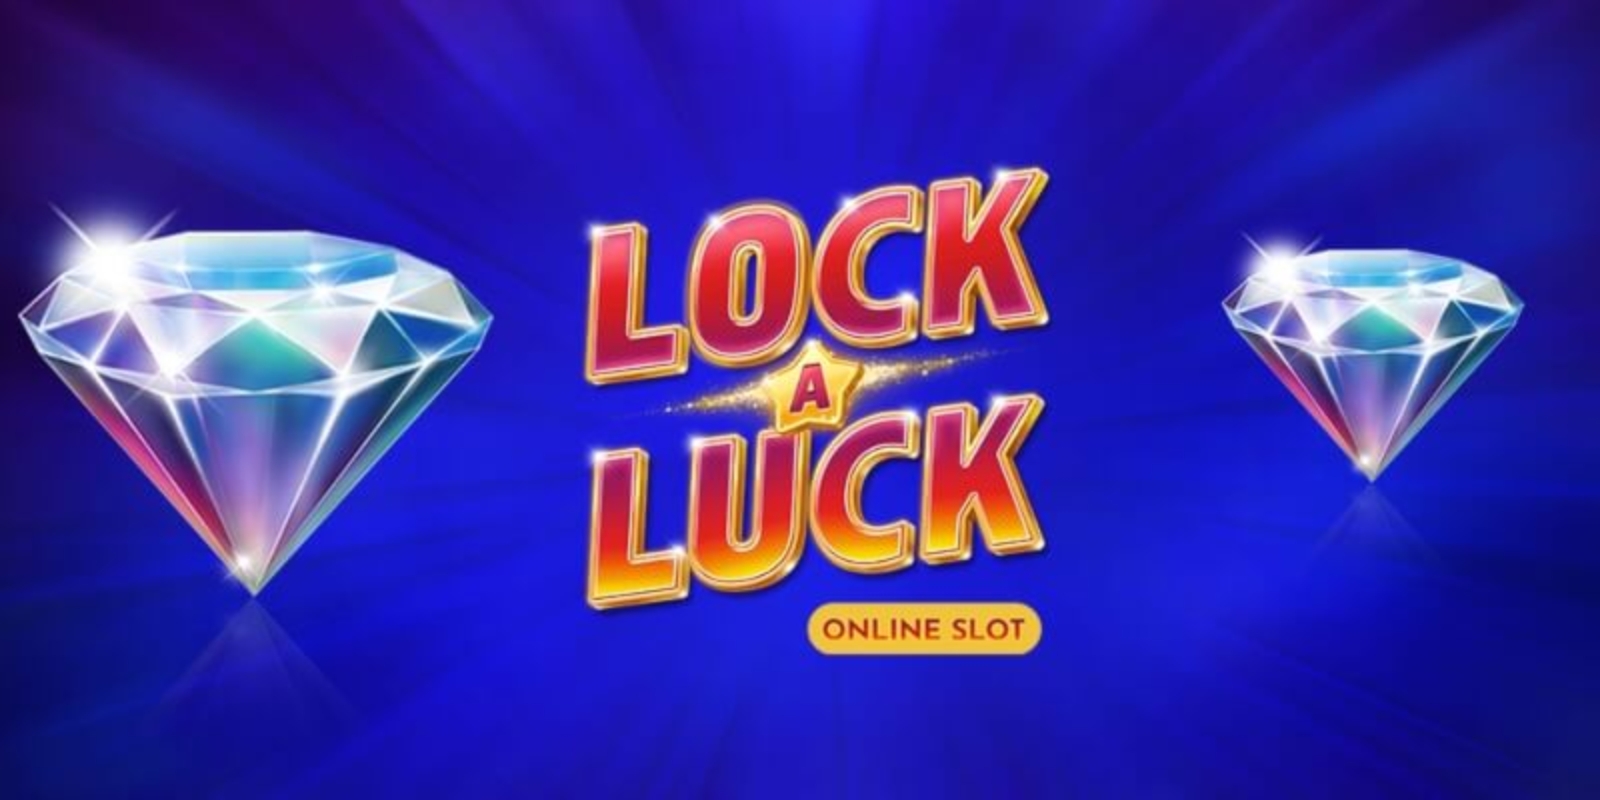 สูตร สล็อต Fun88:คว้าโอกาสชนะสูงถึง 80,000 เหรียญ กับ Lock A Luck Slot